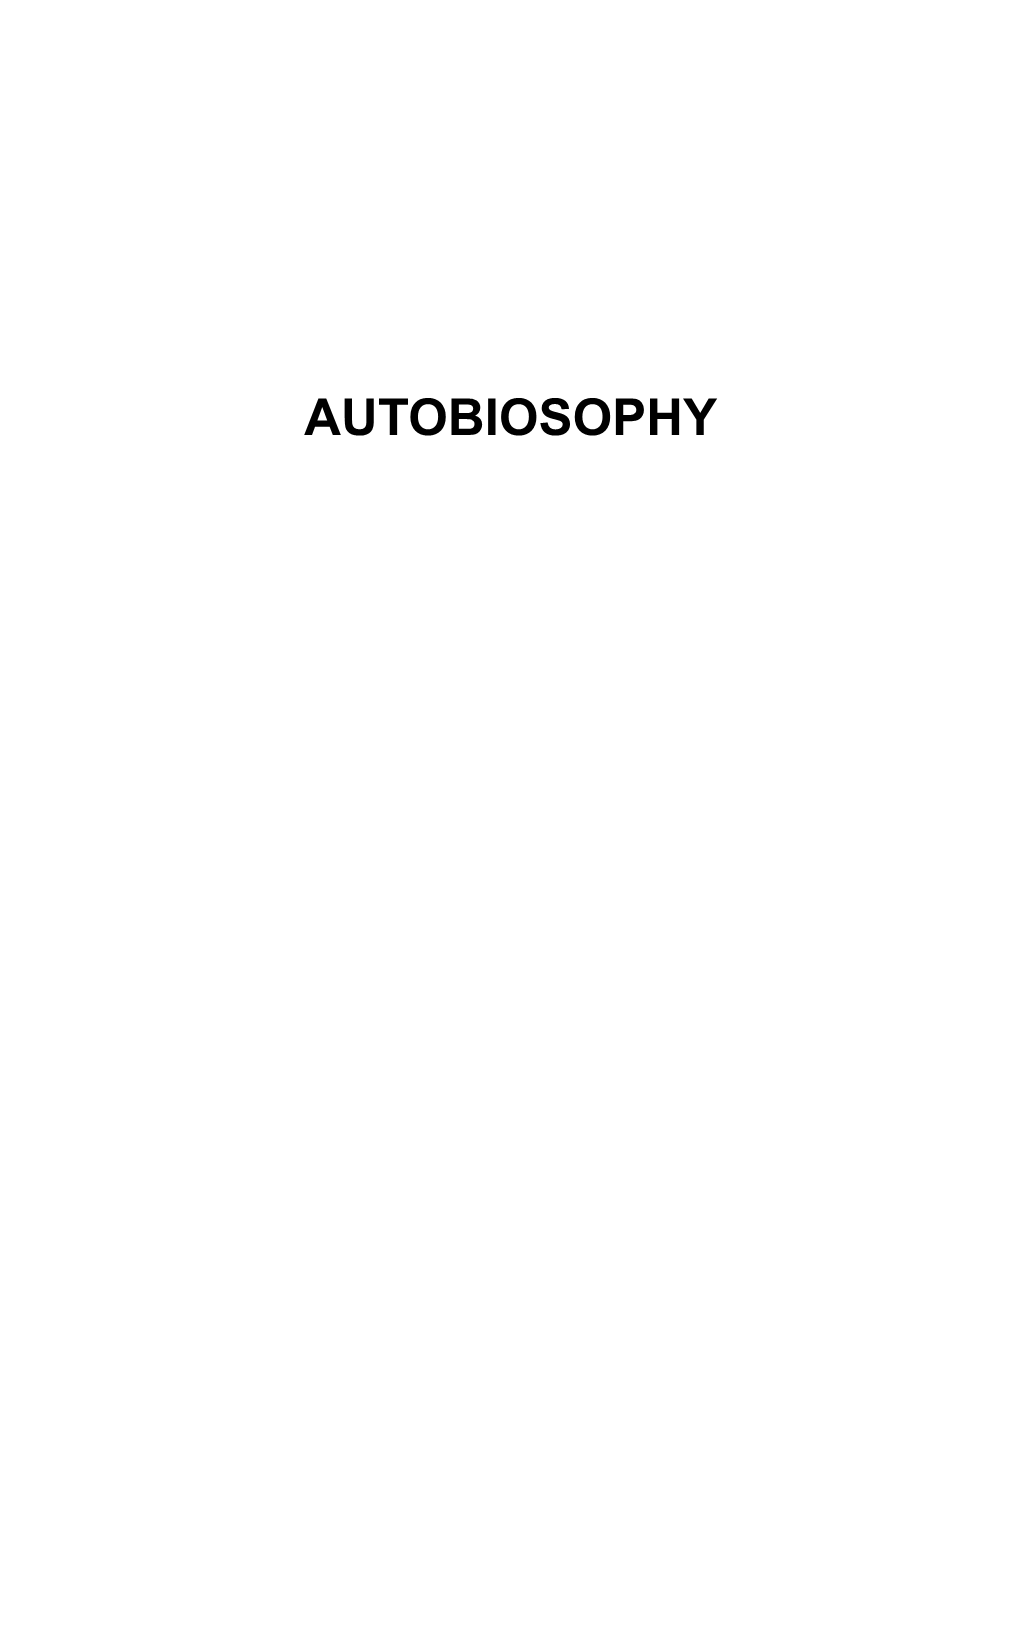 Autobiosophy